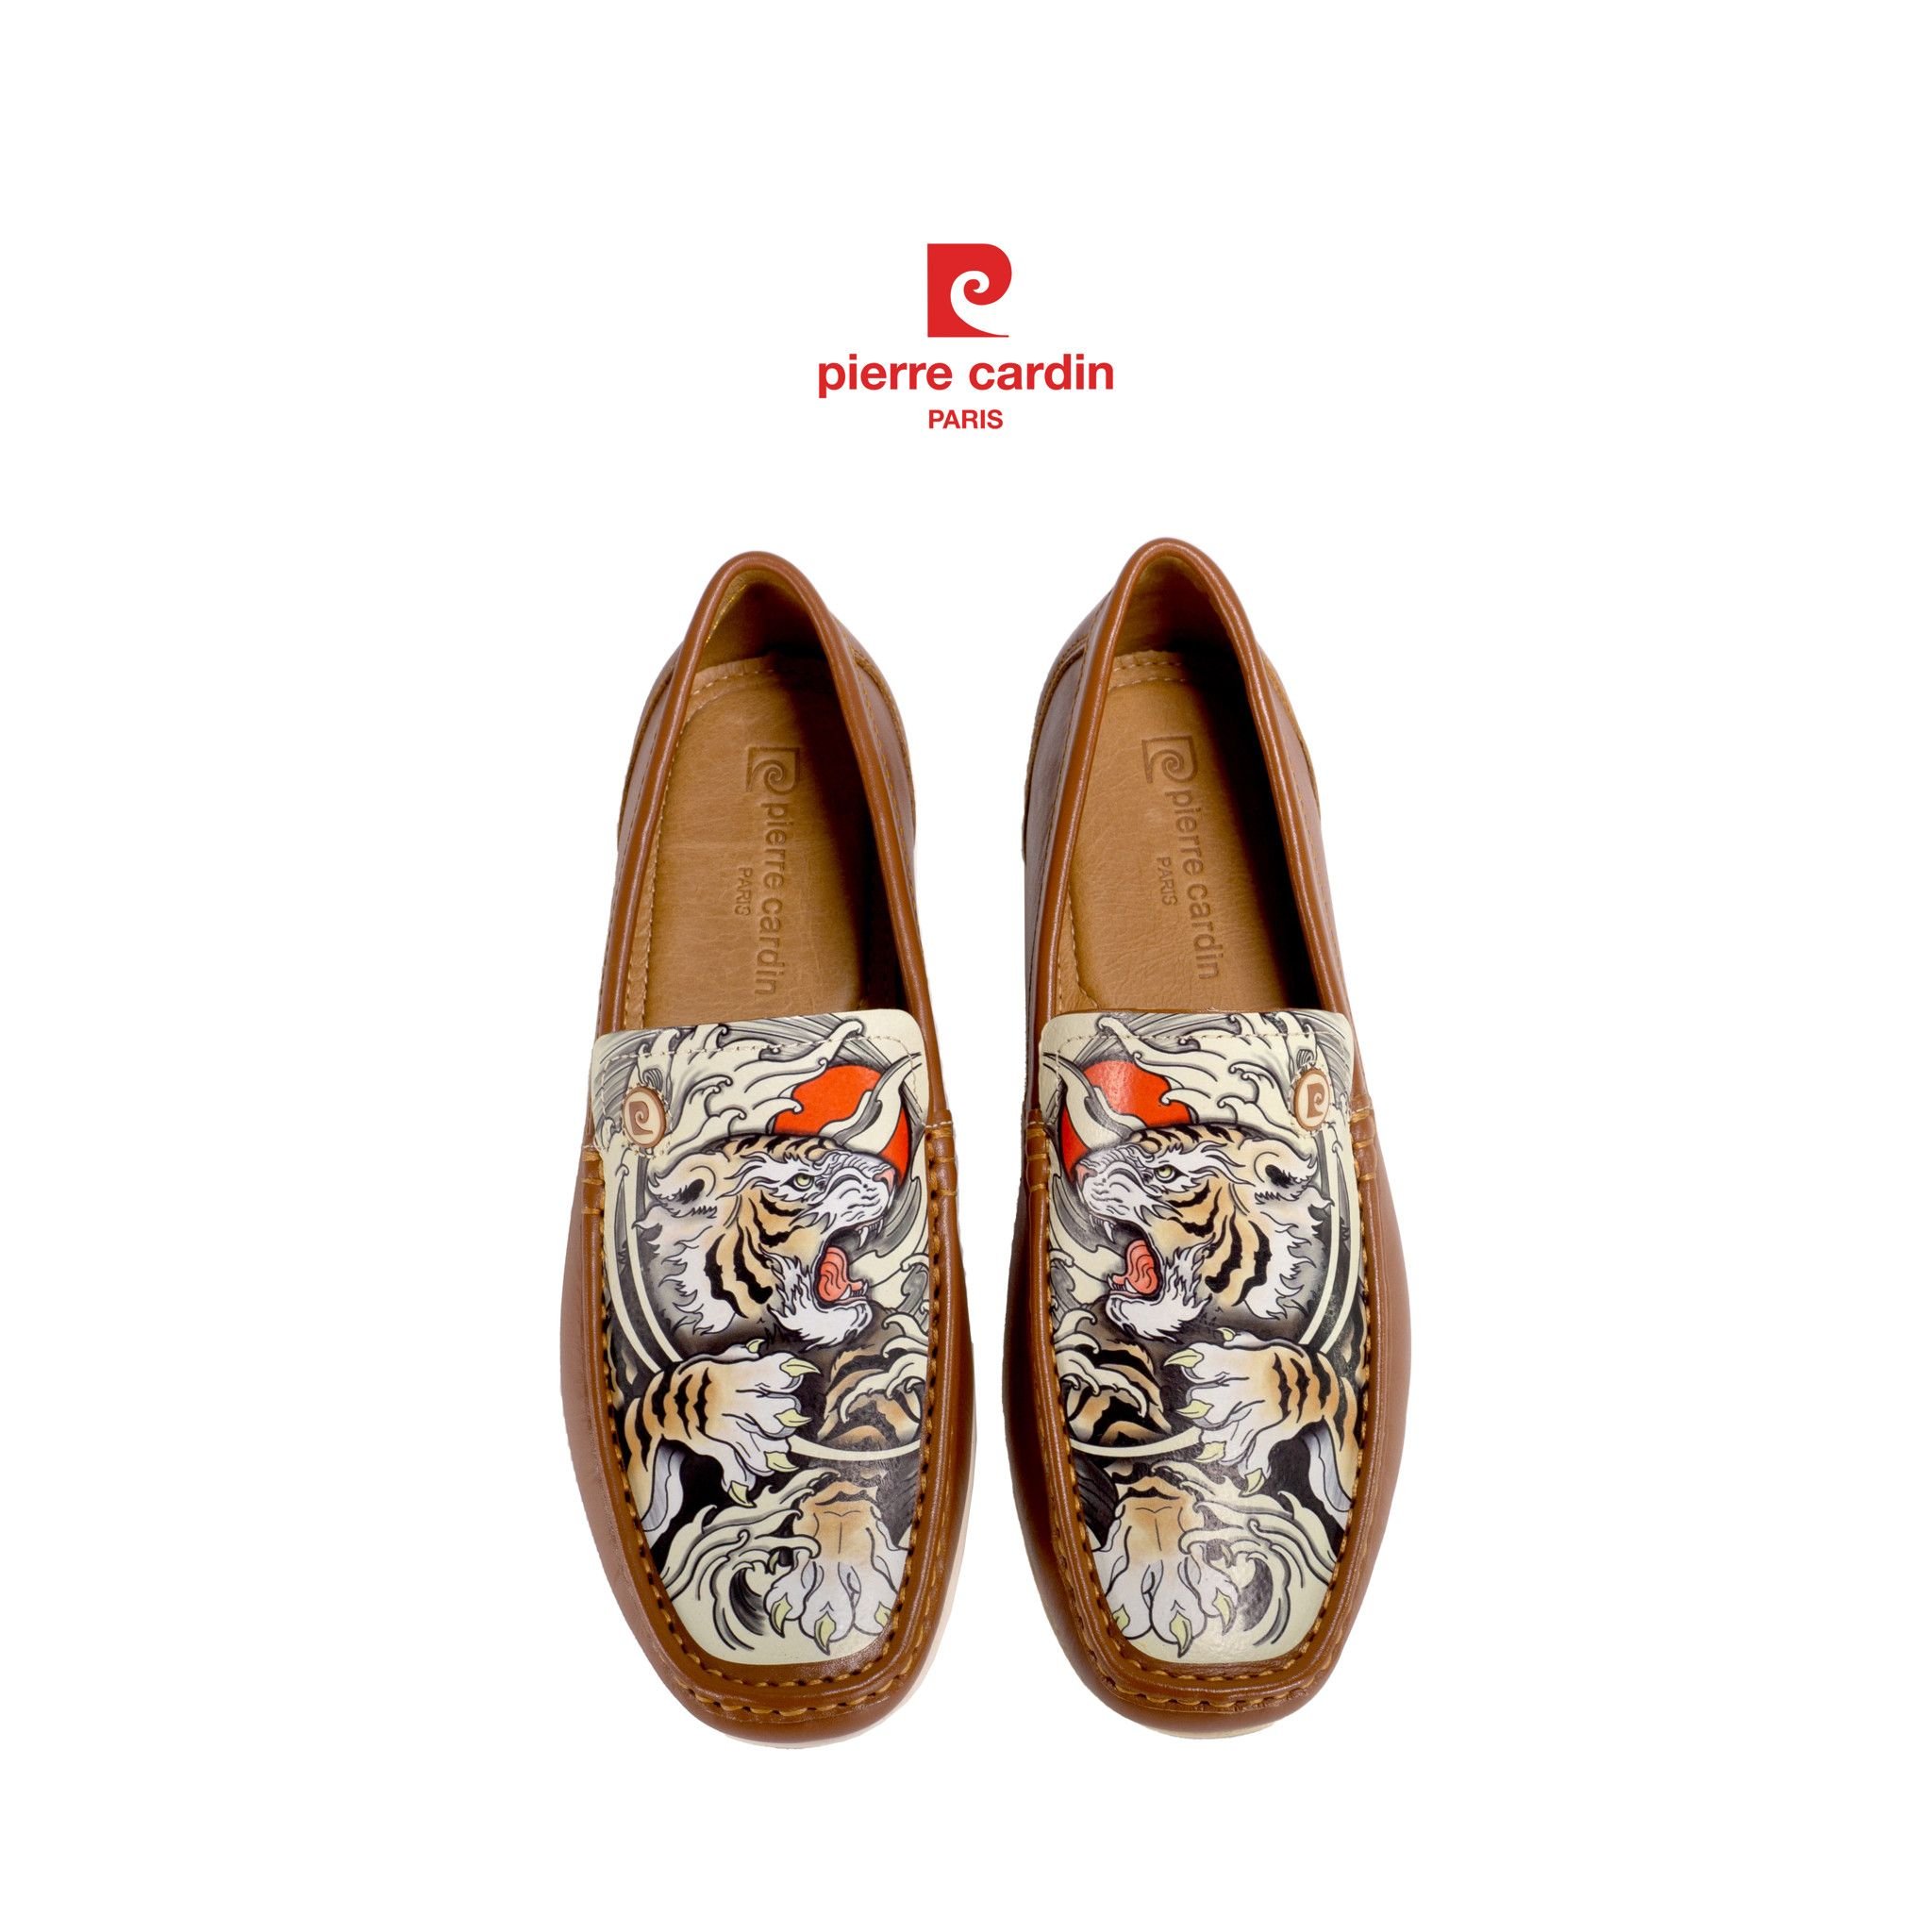 Pierre Cardin Paris Vietnam: Moccasin Shoes - PCMFWLG 518